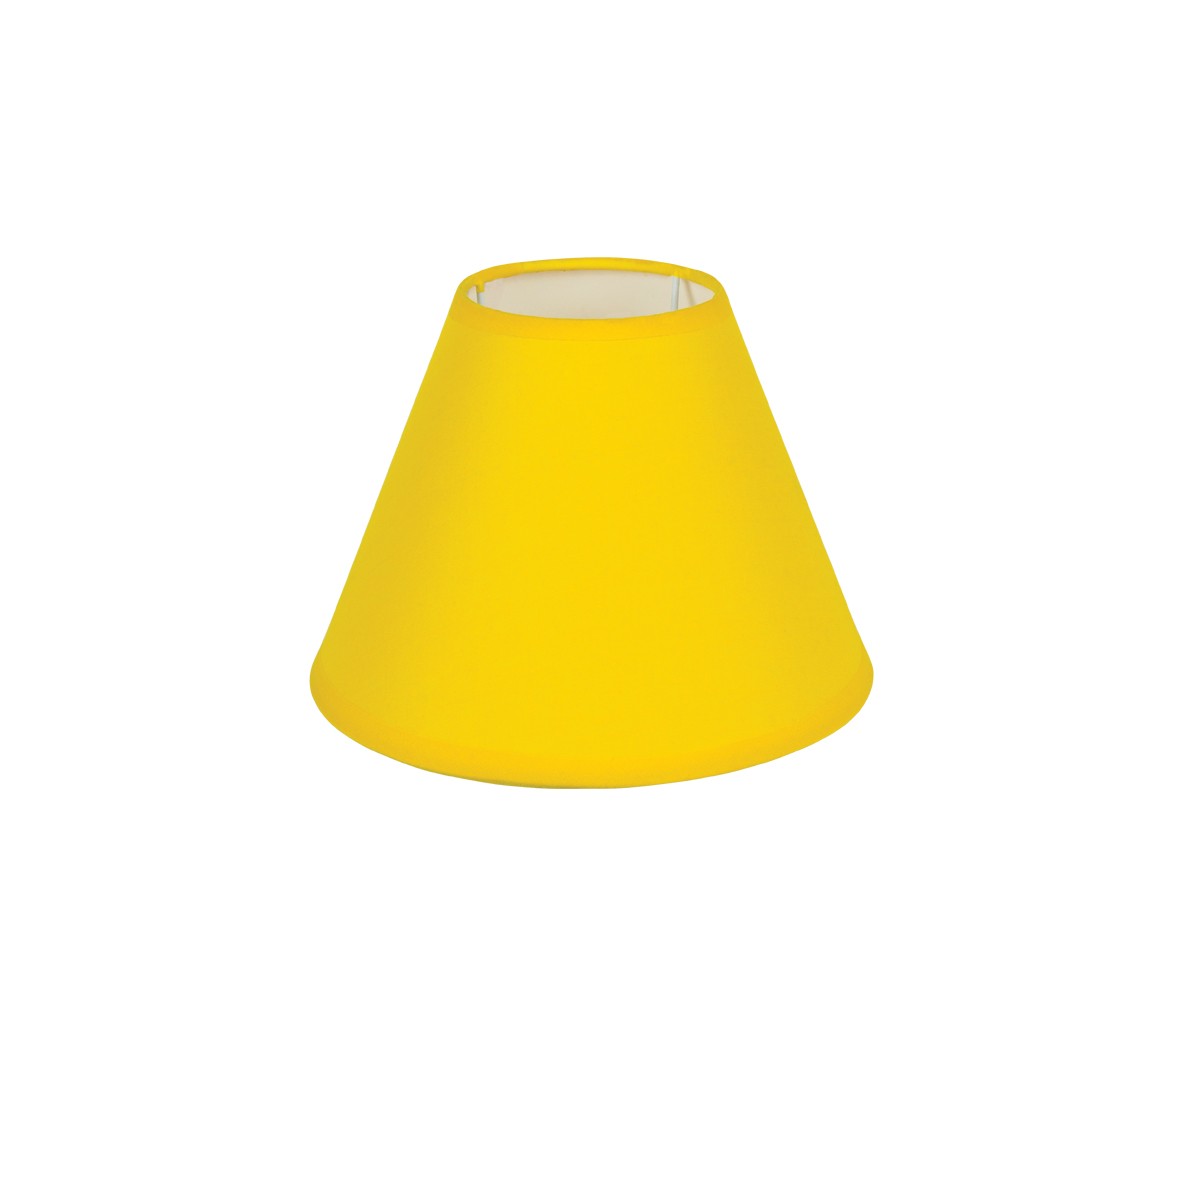 Καπέλο Μονόχρωμο Στρογγυλό Φ18cm Κάτω Πλευρά -Σε Κίτρινο Χρώμα        VK/E27/E14/D18/Y